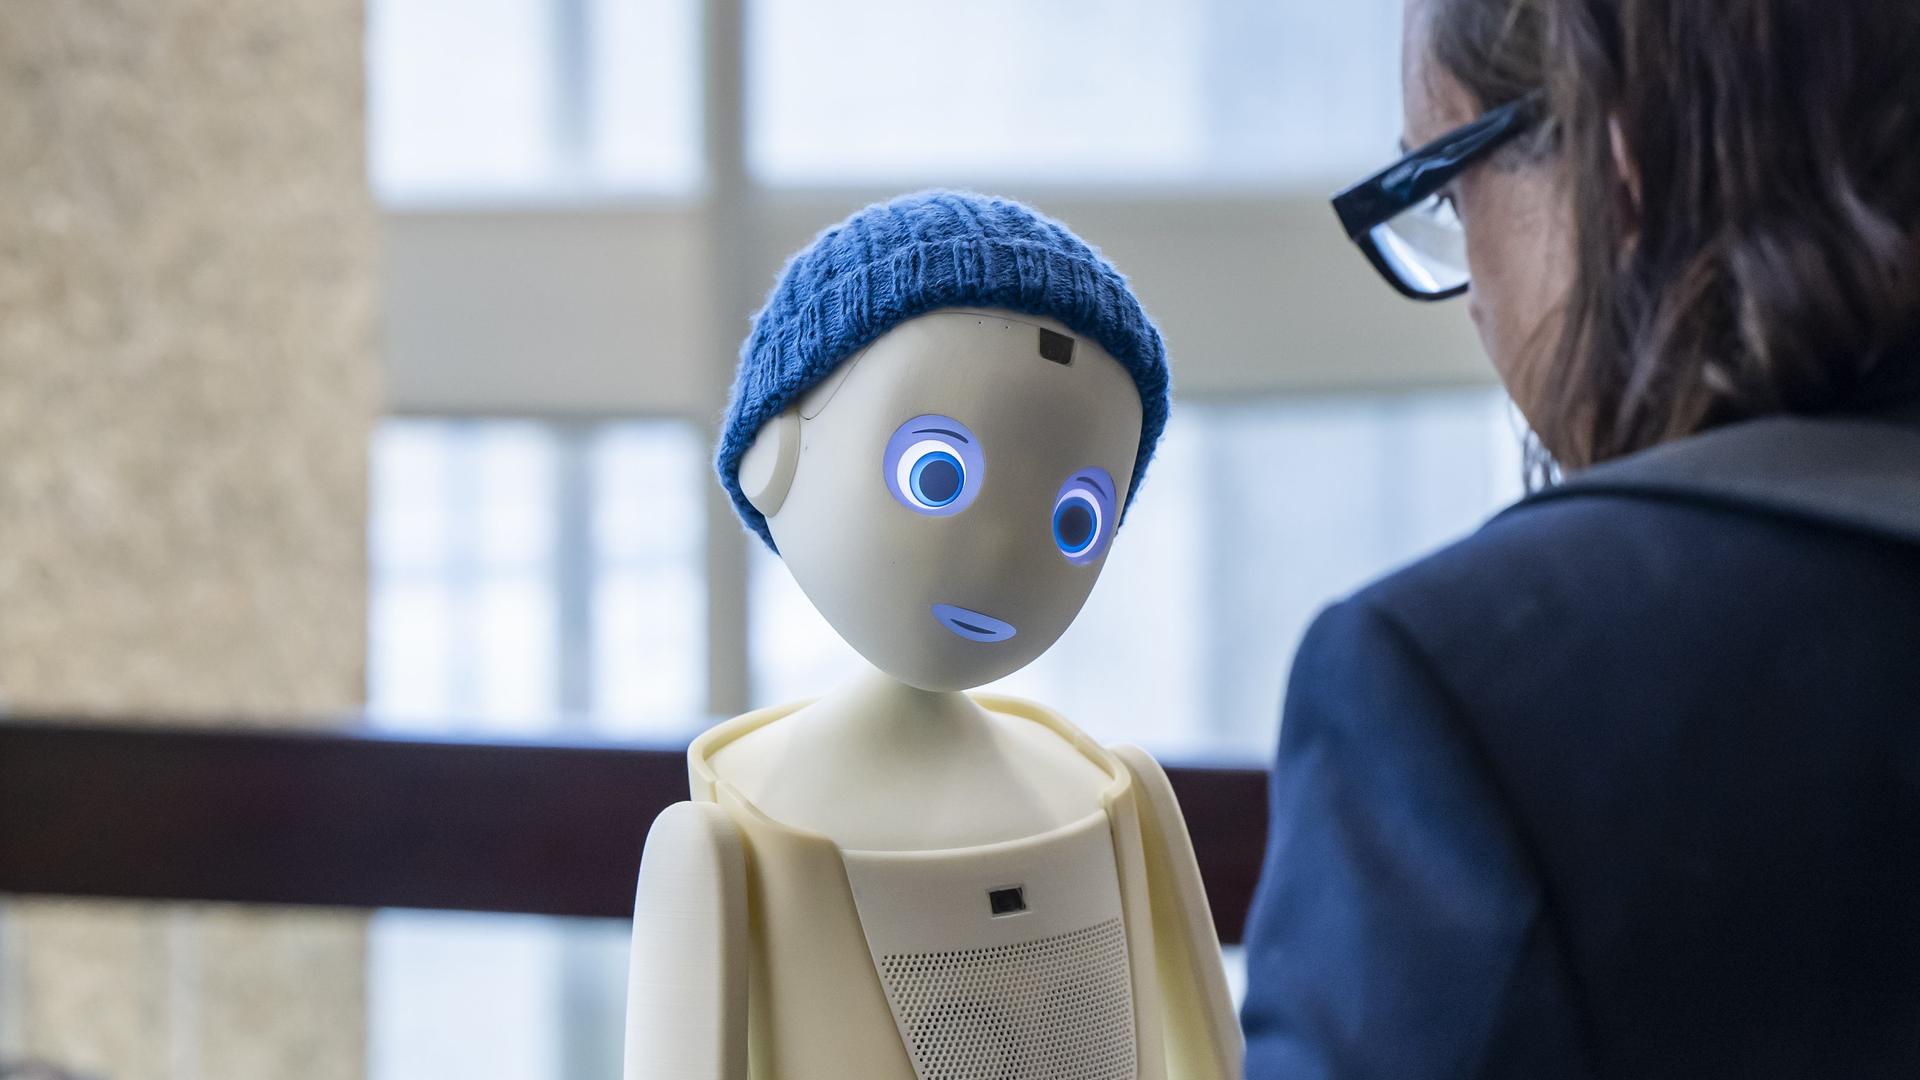 Der Sozialroboter Oscar der Münchner Firma Navel Robotics im Bildzentrum, mit Strickmütze und großen Augen, ihm gegenüber eine Frau in Rückansicht